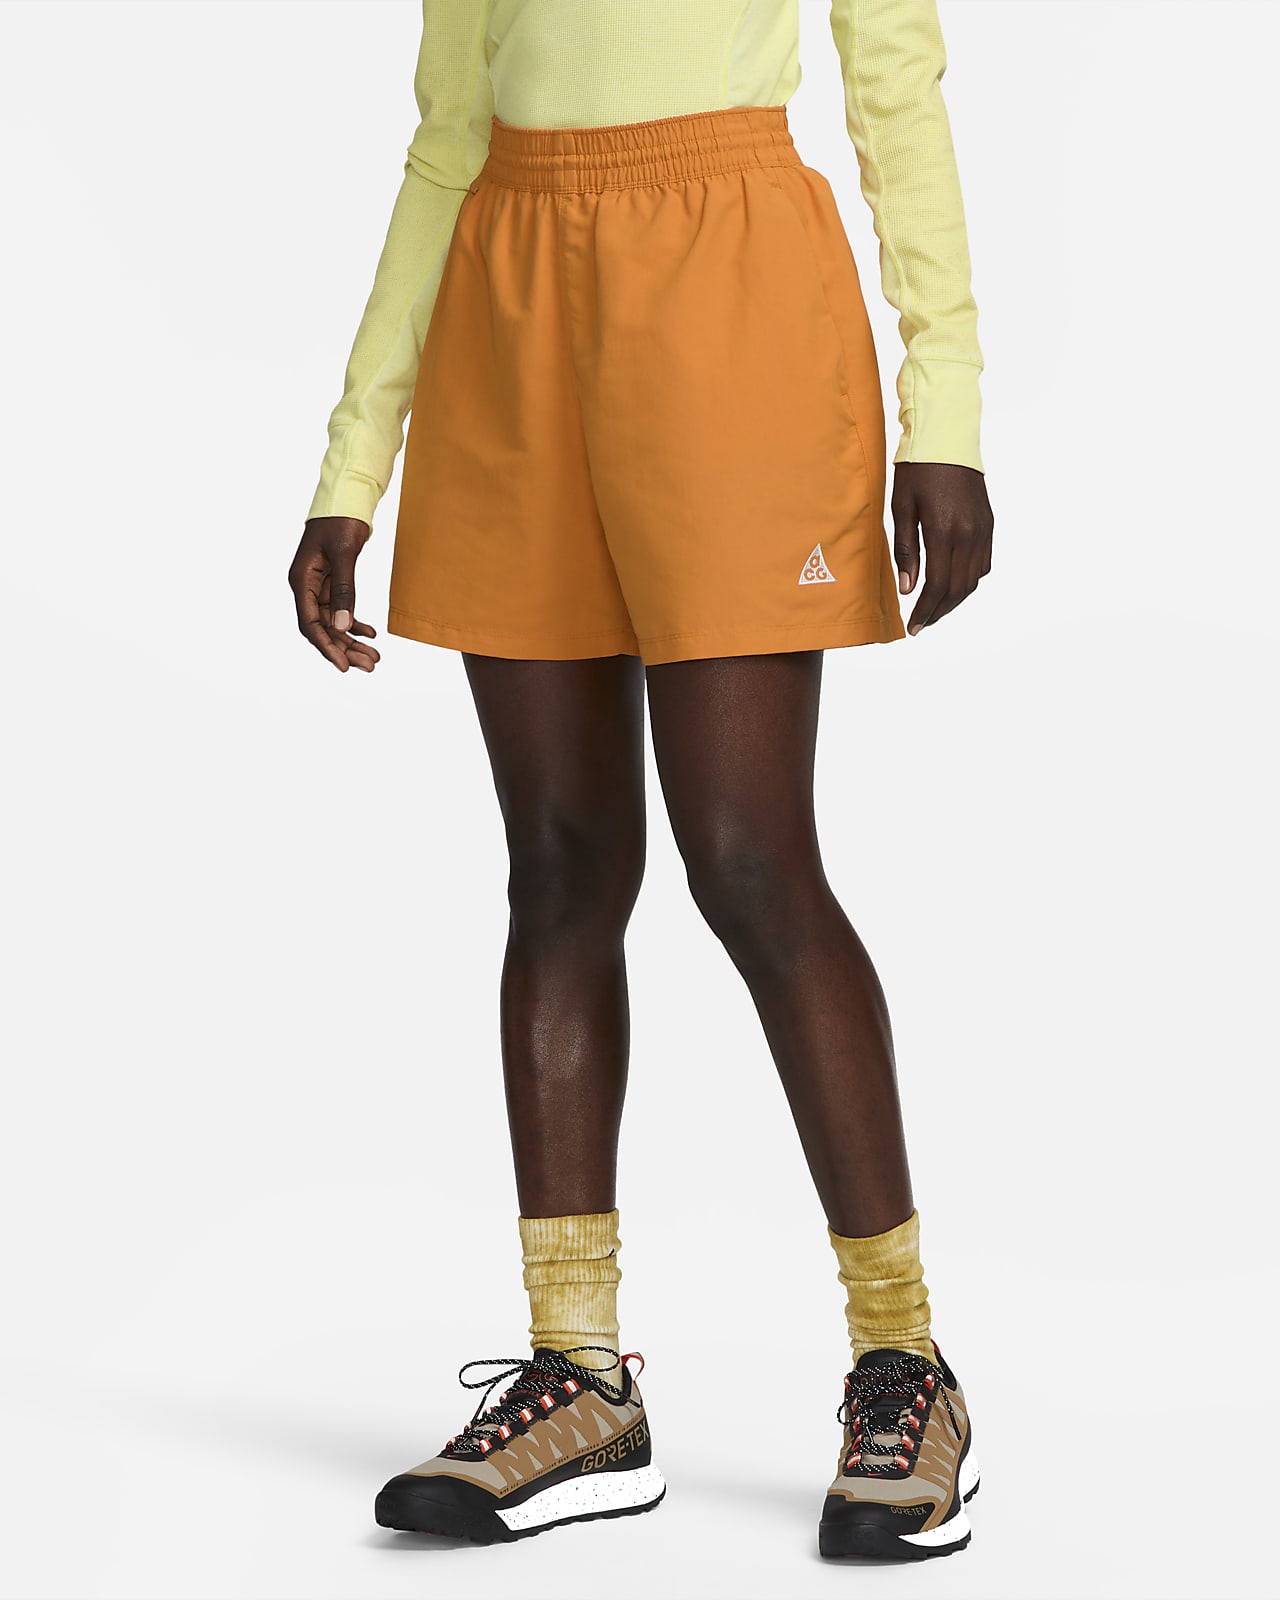 Nike ACG Women's Shorts